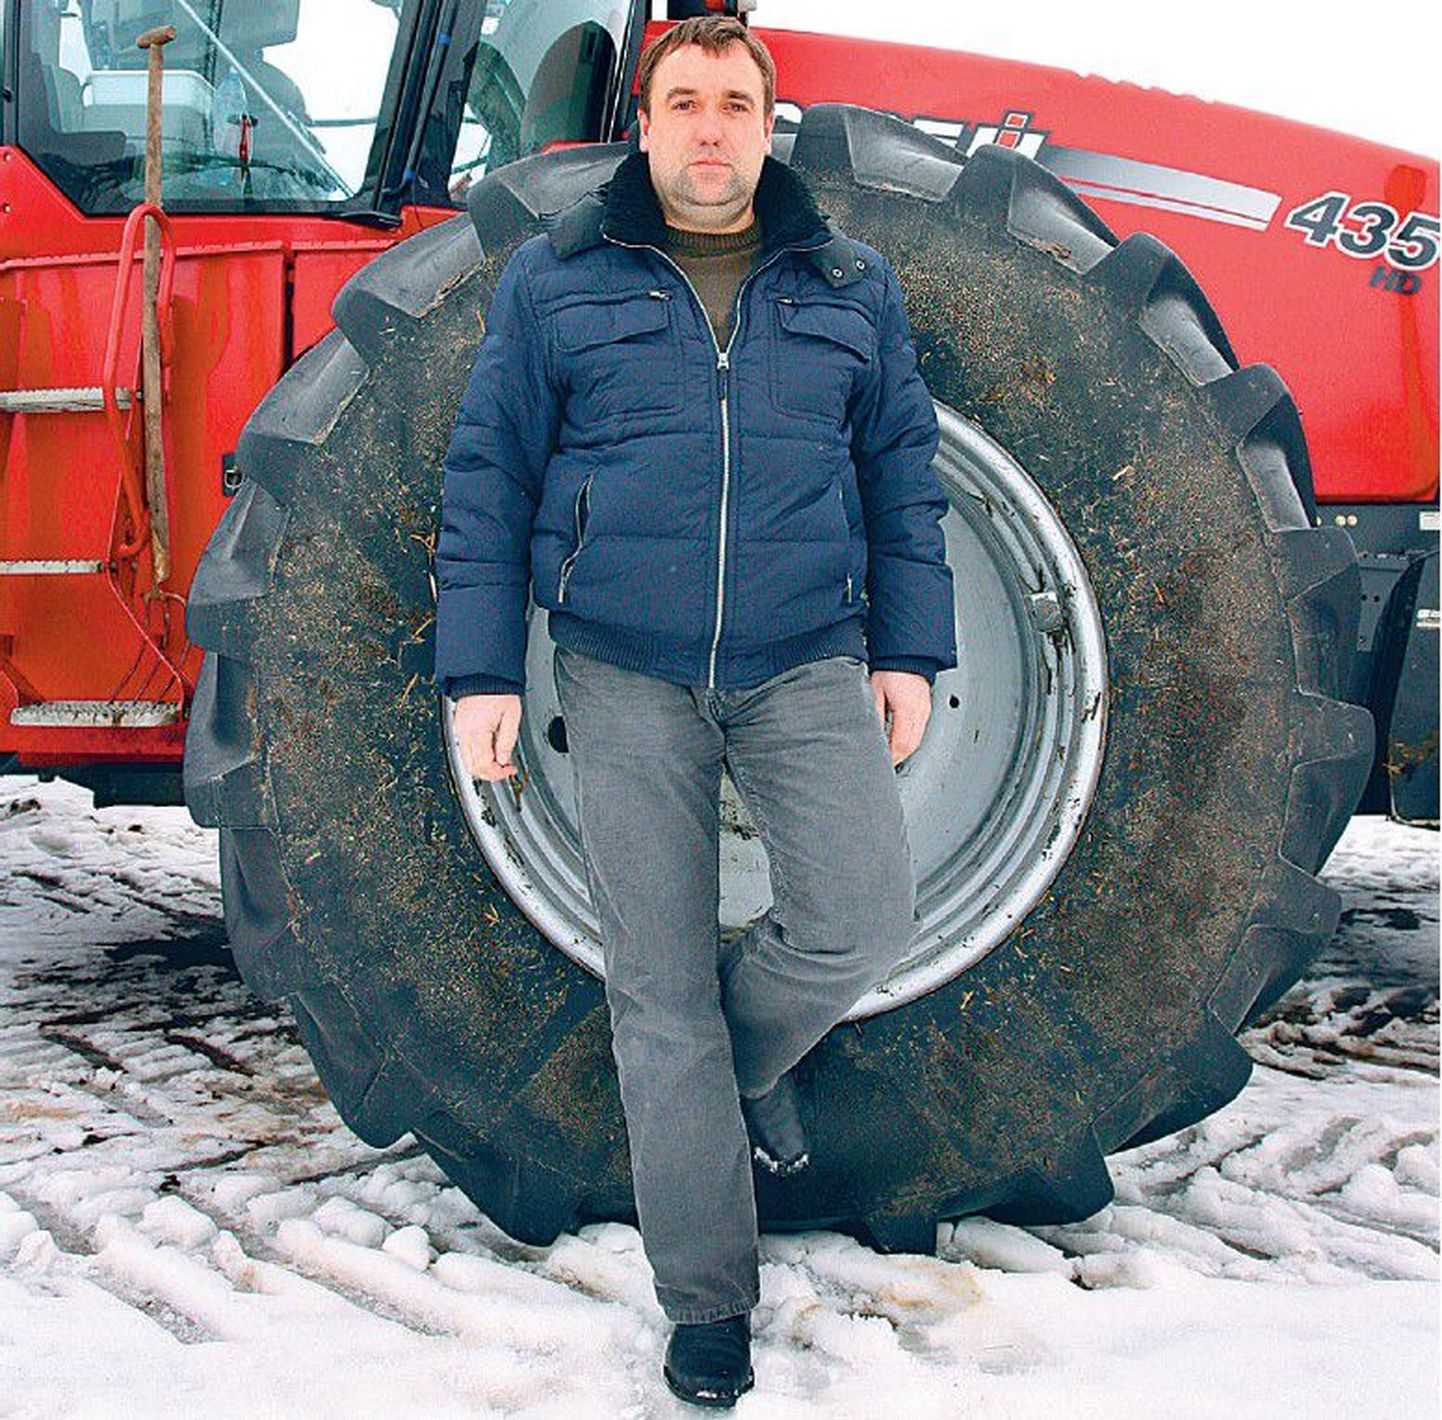 OÜ Estonia juhatuse liige Andrus Lund seisab üle kolme miljoni krooni maksnud võimsa traktori juures, mille ettevõte mullu põllumajandustoetuse eest ostis.